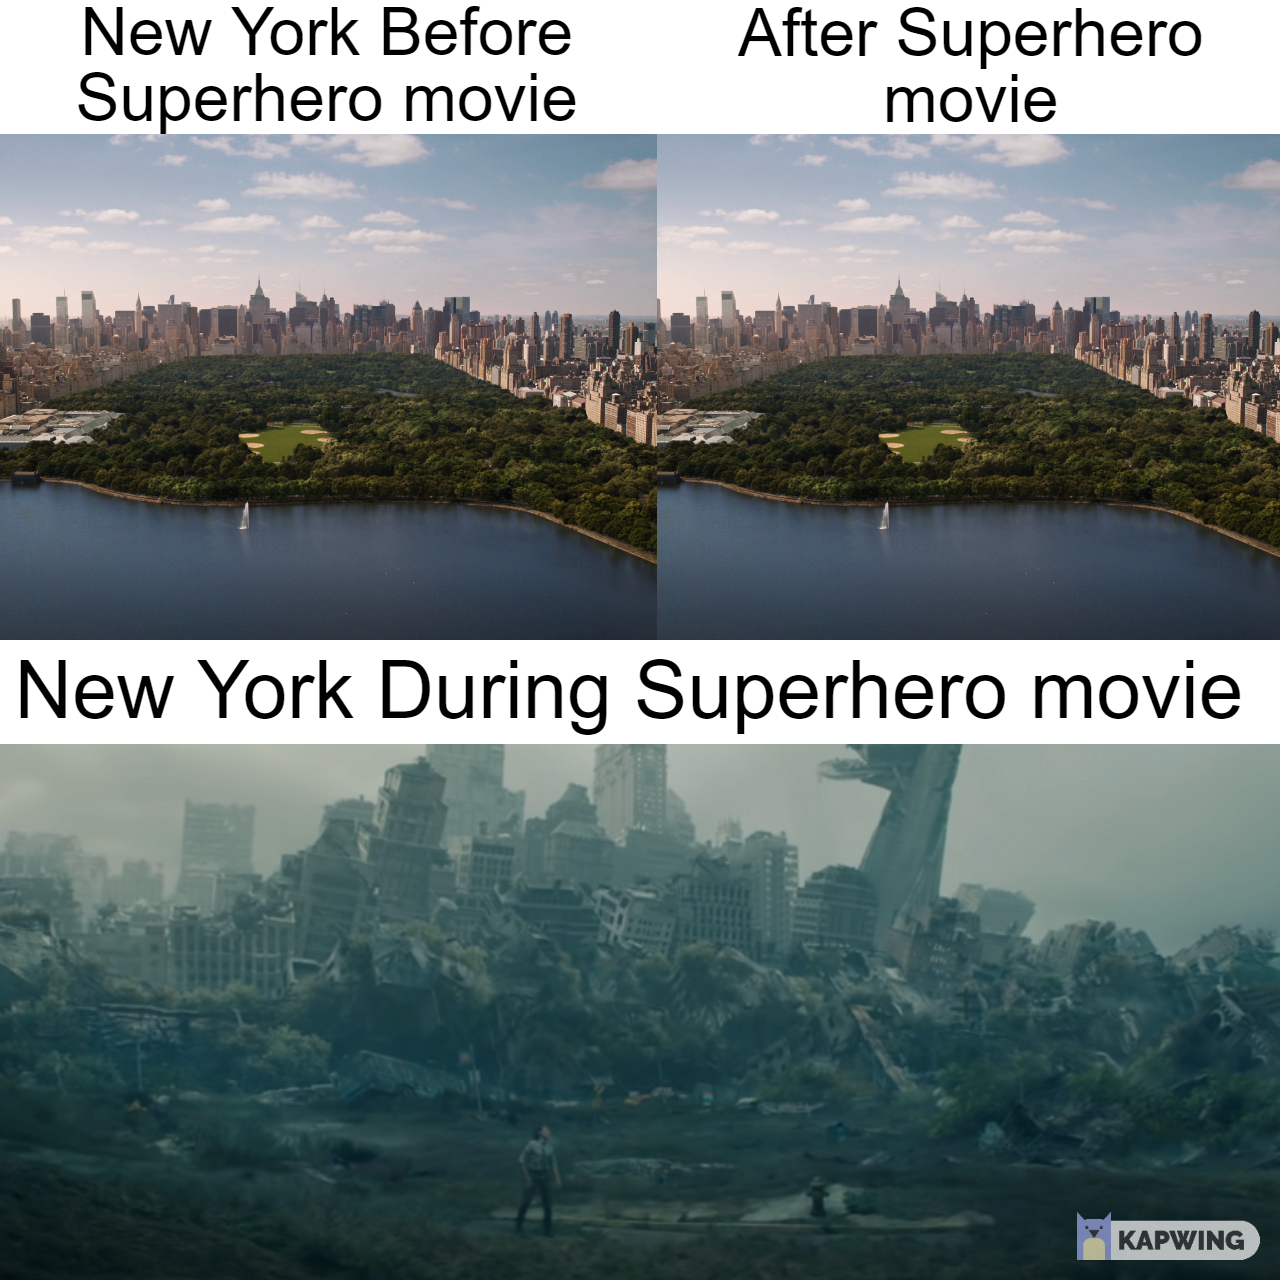 water resources - New York Before Superhero movie After Superhero movie New York During Superhero movie Kapwing